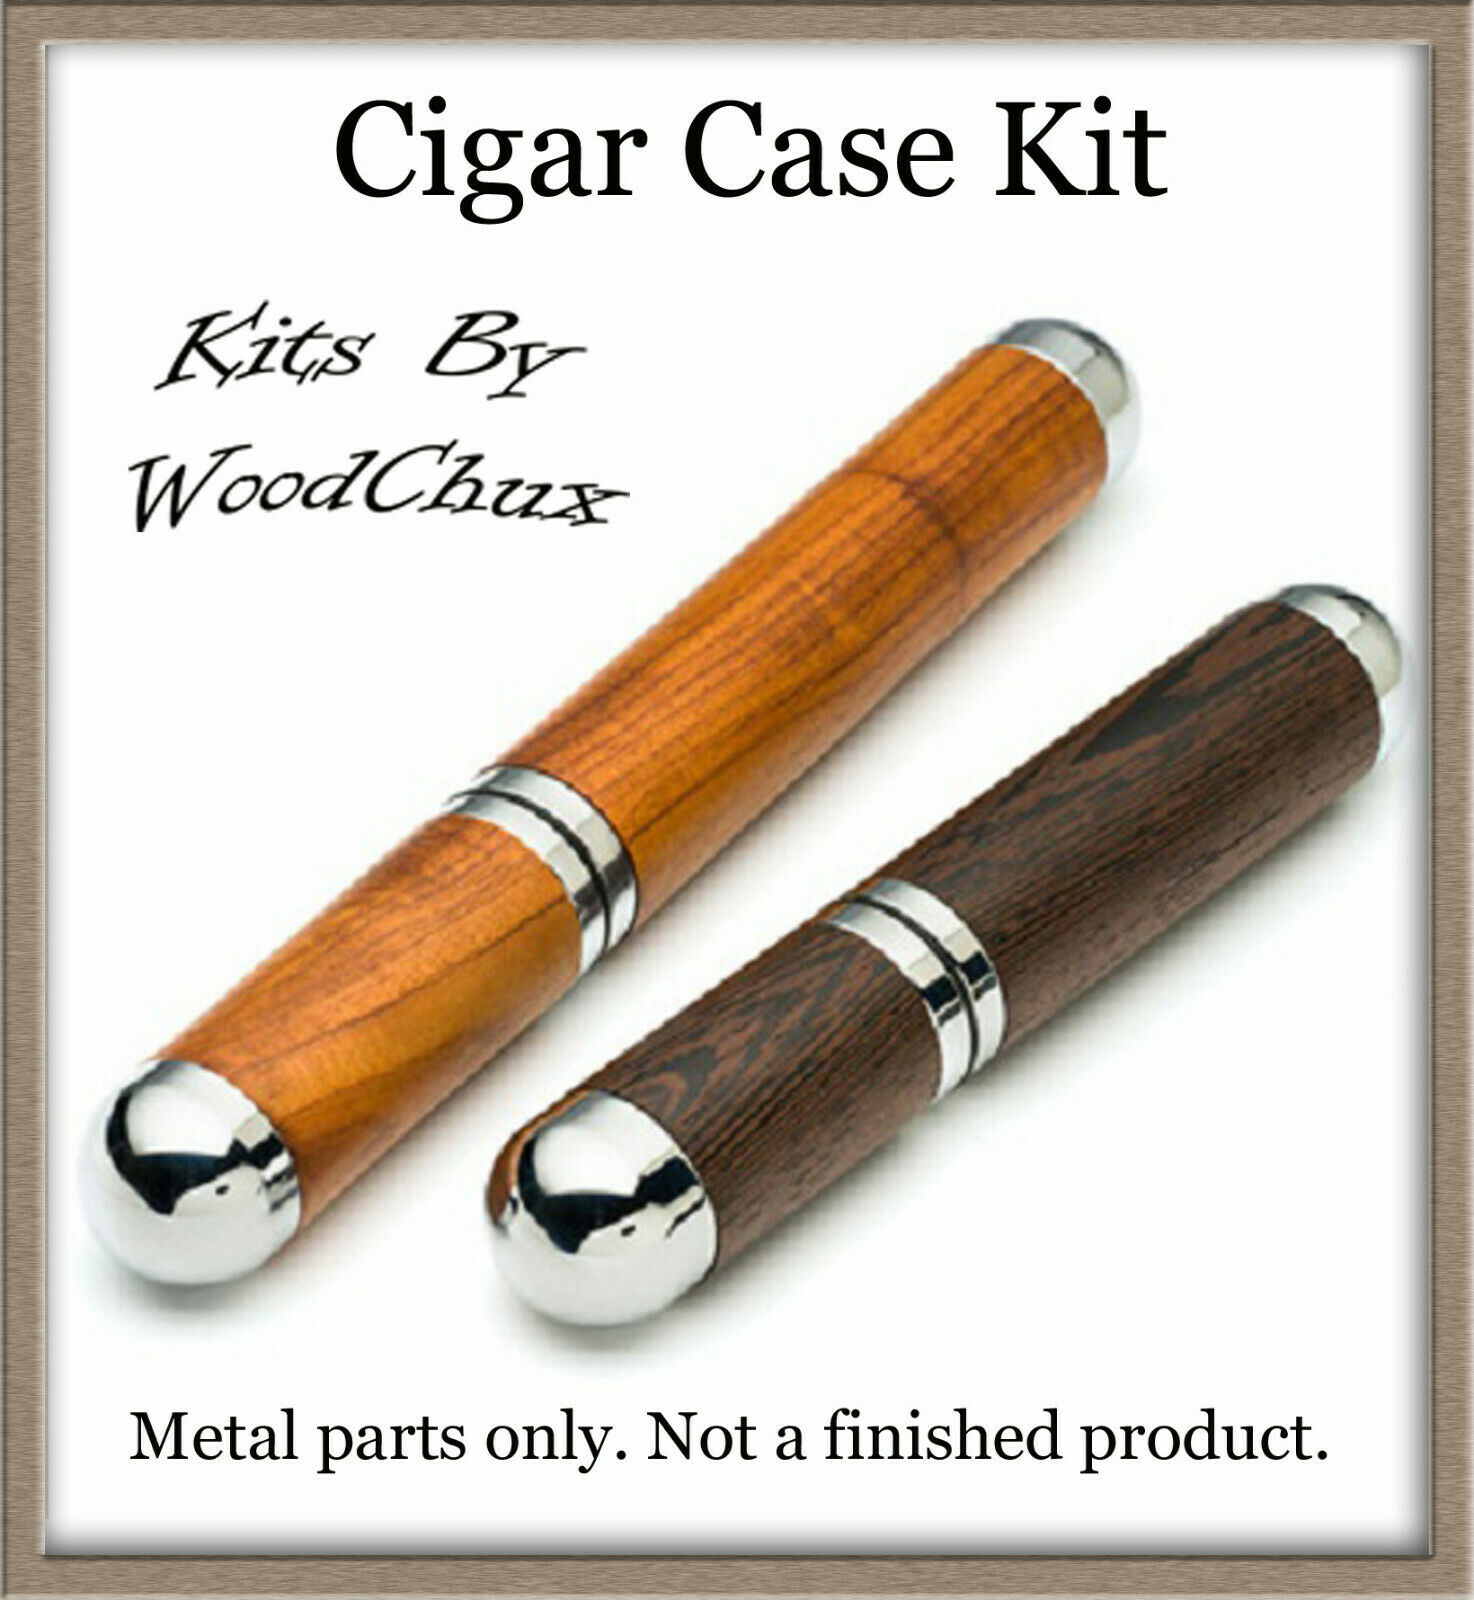 Artisan Cigar Case Tubes Bushings Drill Bit Woodturning Kit Wood Turning Fast